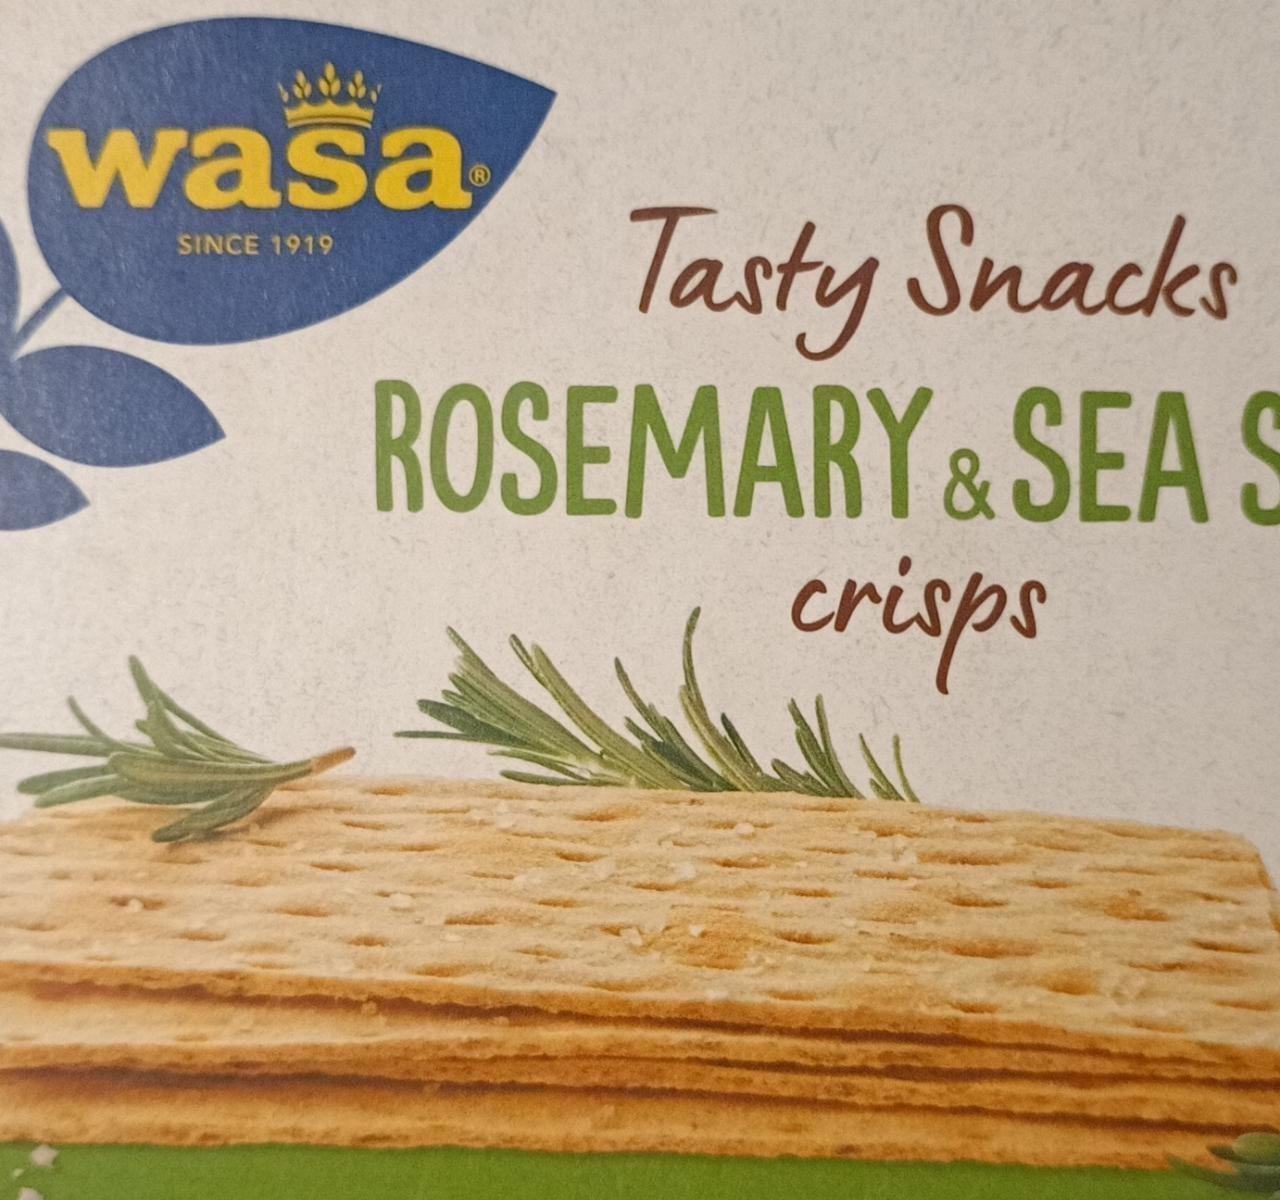 Képek - Tasty snacks Rosemary & Sea salt crisps Wasa